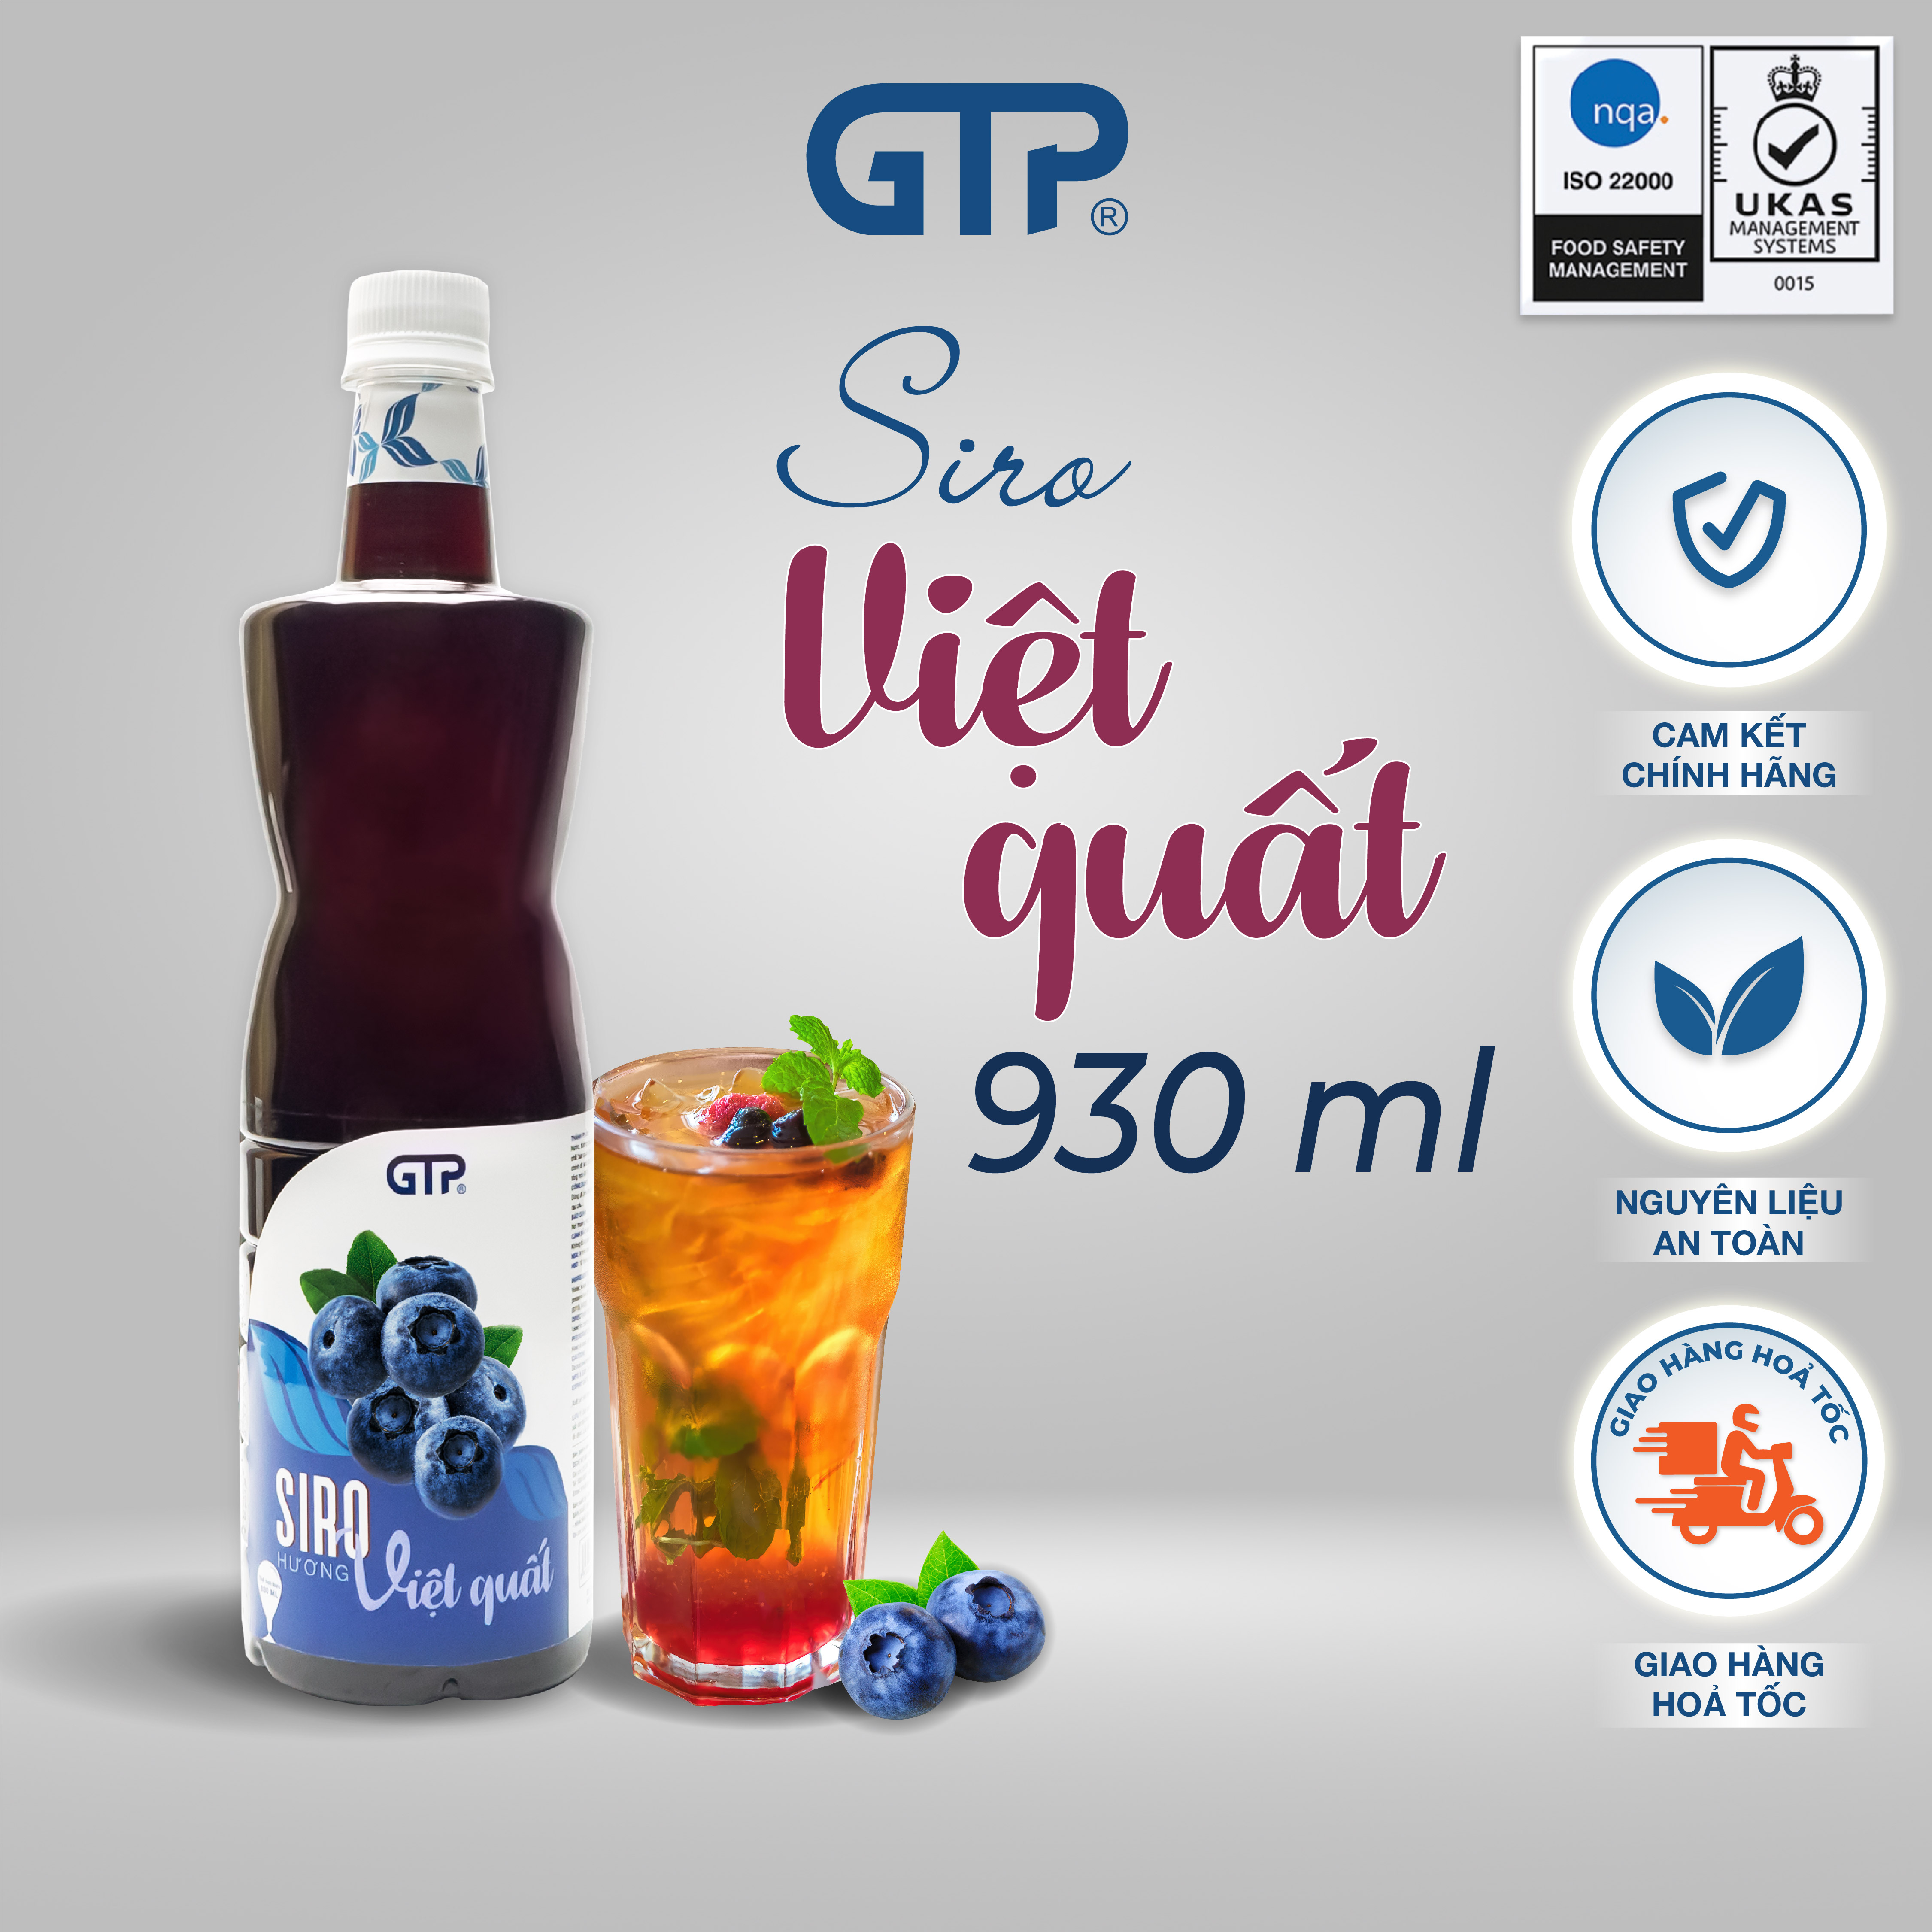 Syrup Việt Quất GTP 930 ml